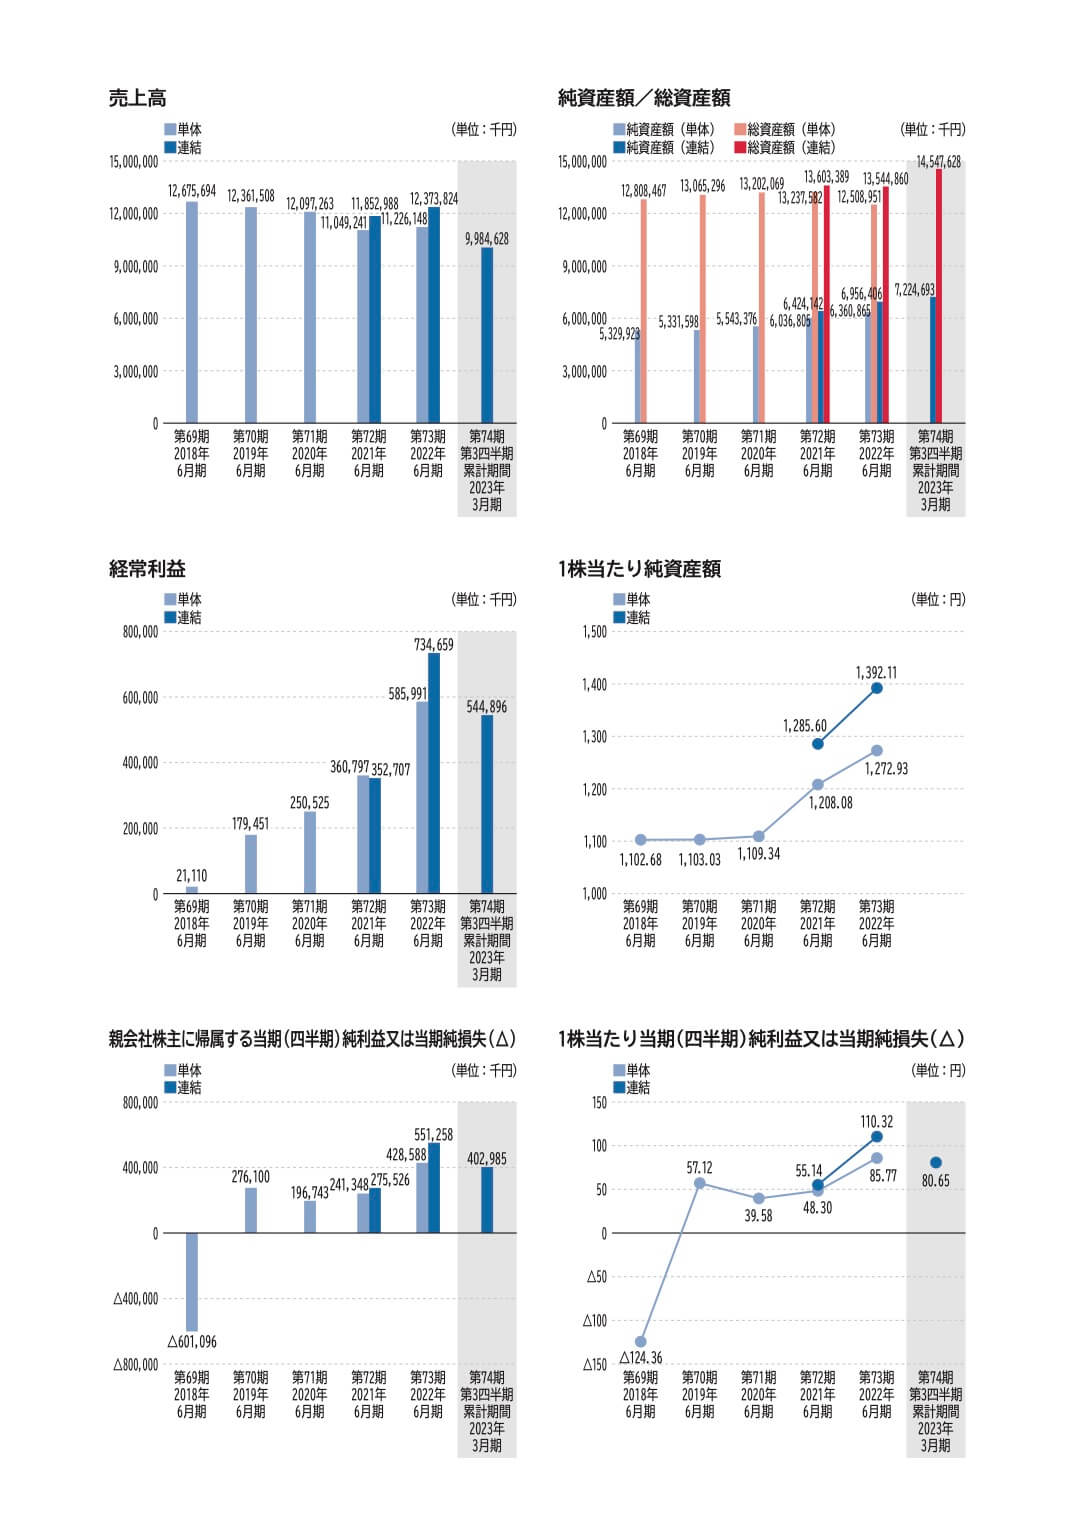 笹徳印刷(3958)の主要な経営指標等の推移